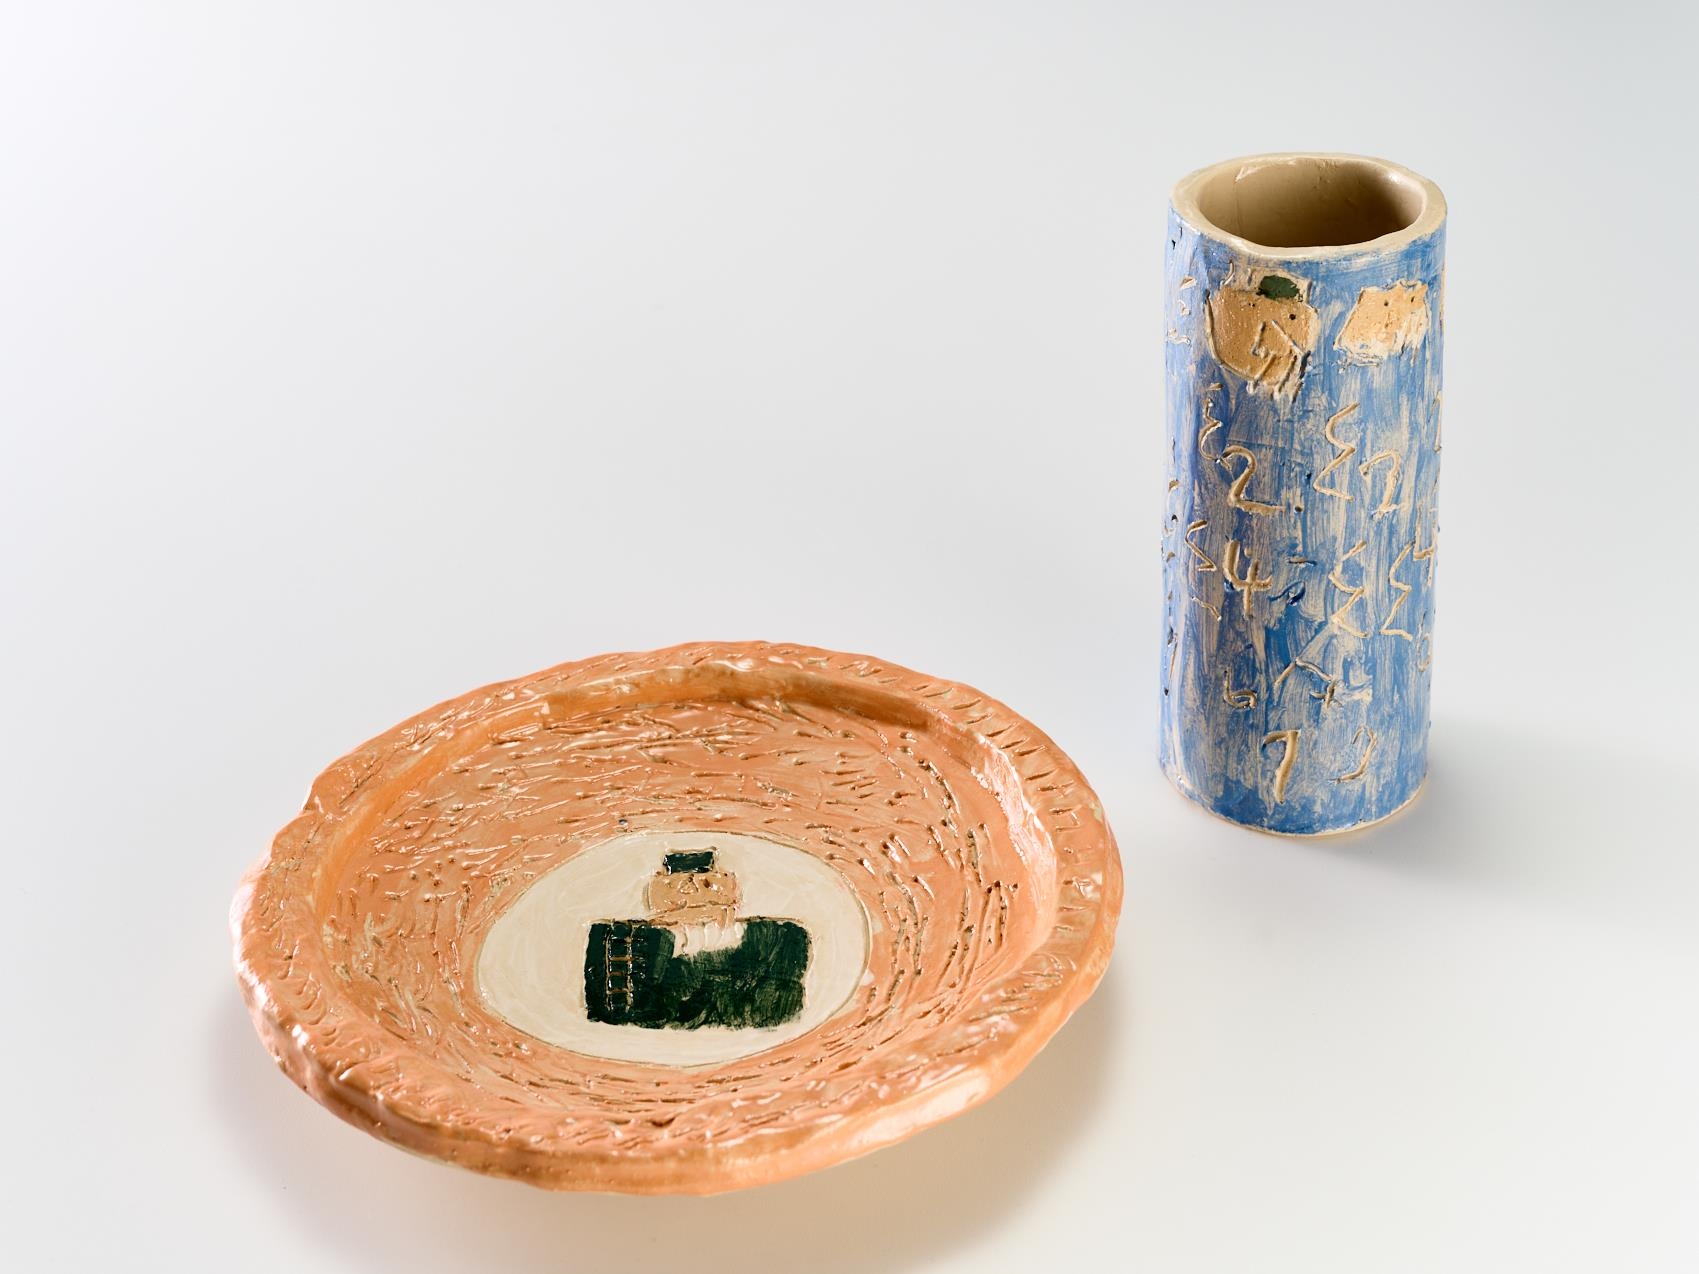 Keramik all inclusive_40 (Keramikmuseum Westerwald / Helge Articus)